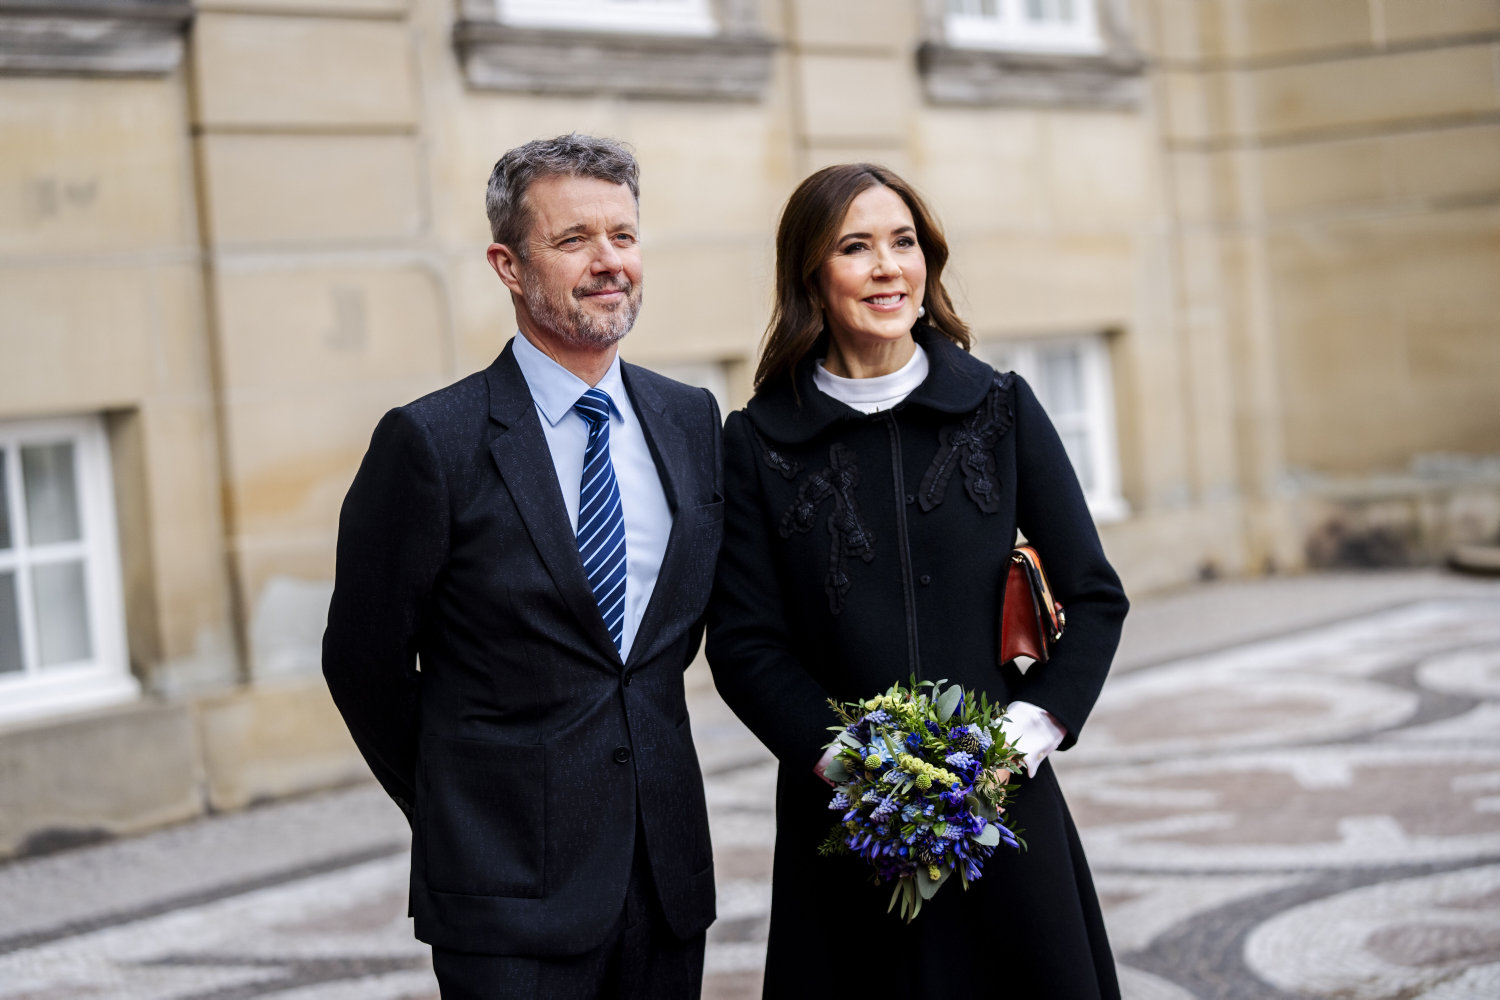 kongeparret skal mødes med svensk statsminister under statsbesøg